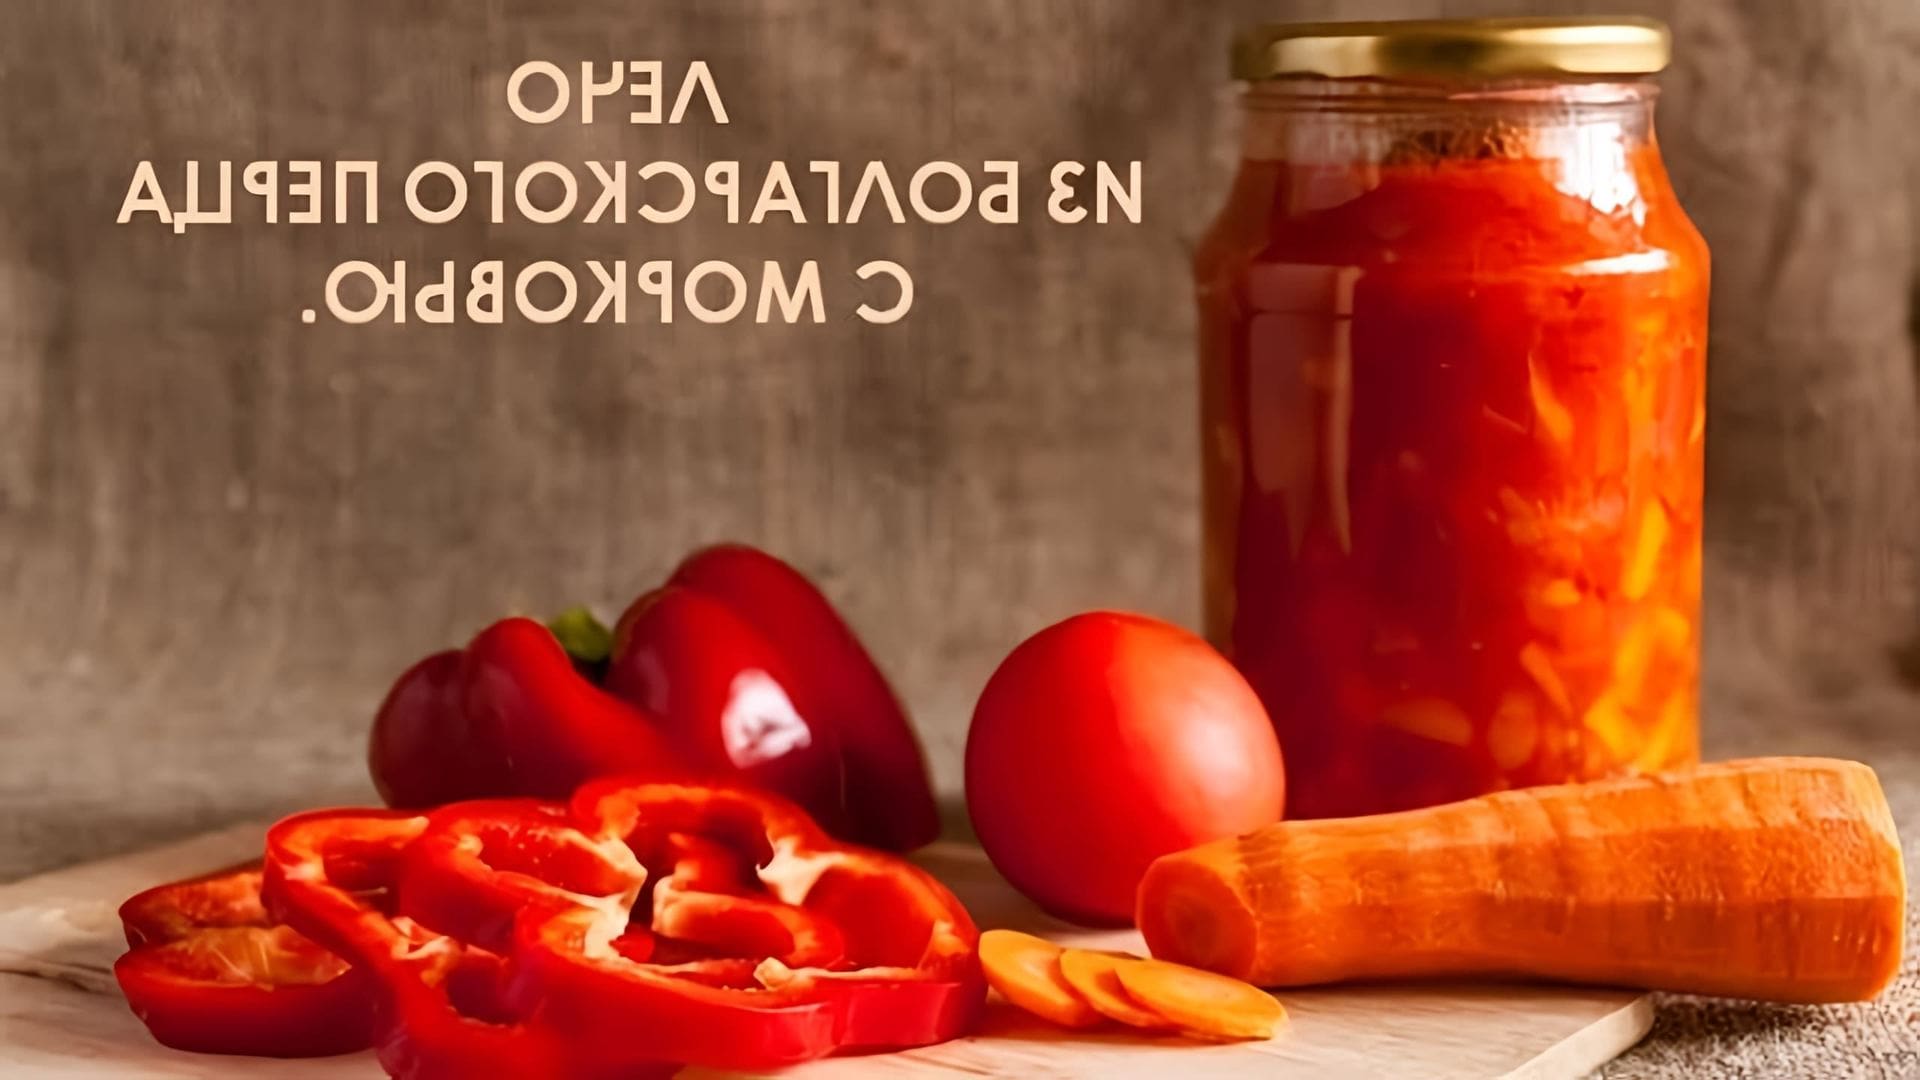 В этом видео демонстрируется процесс приготовления лечо из болгарского перца с морковью